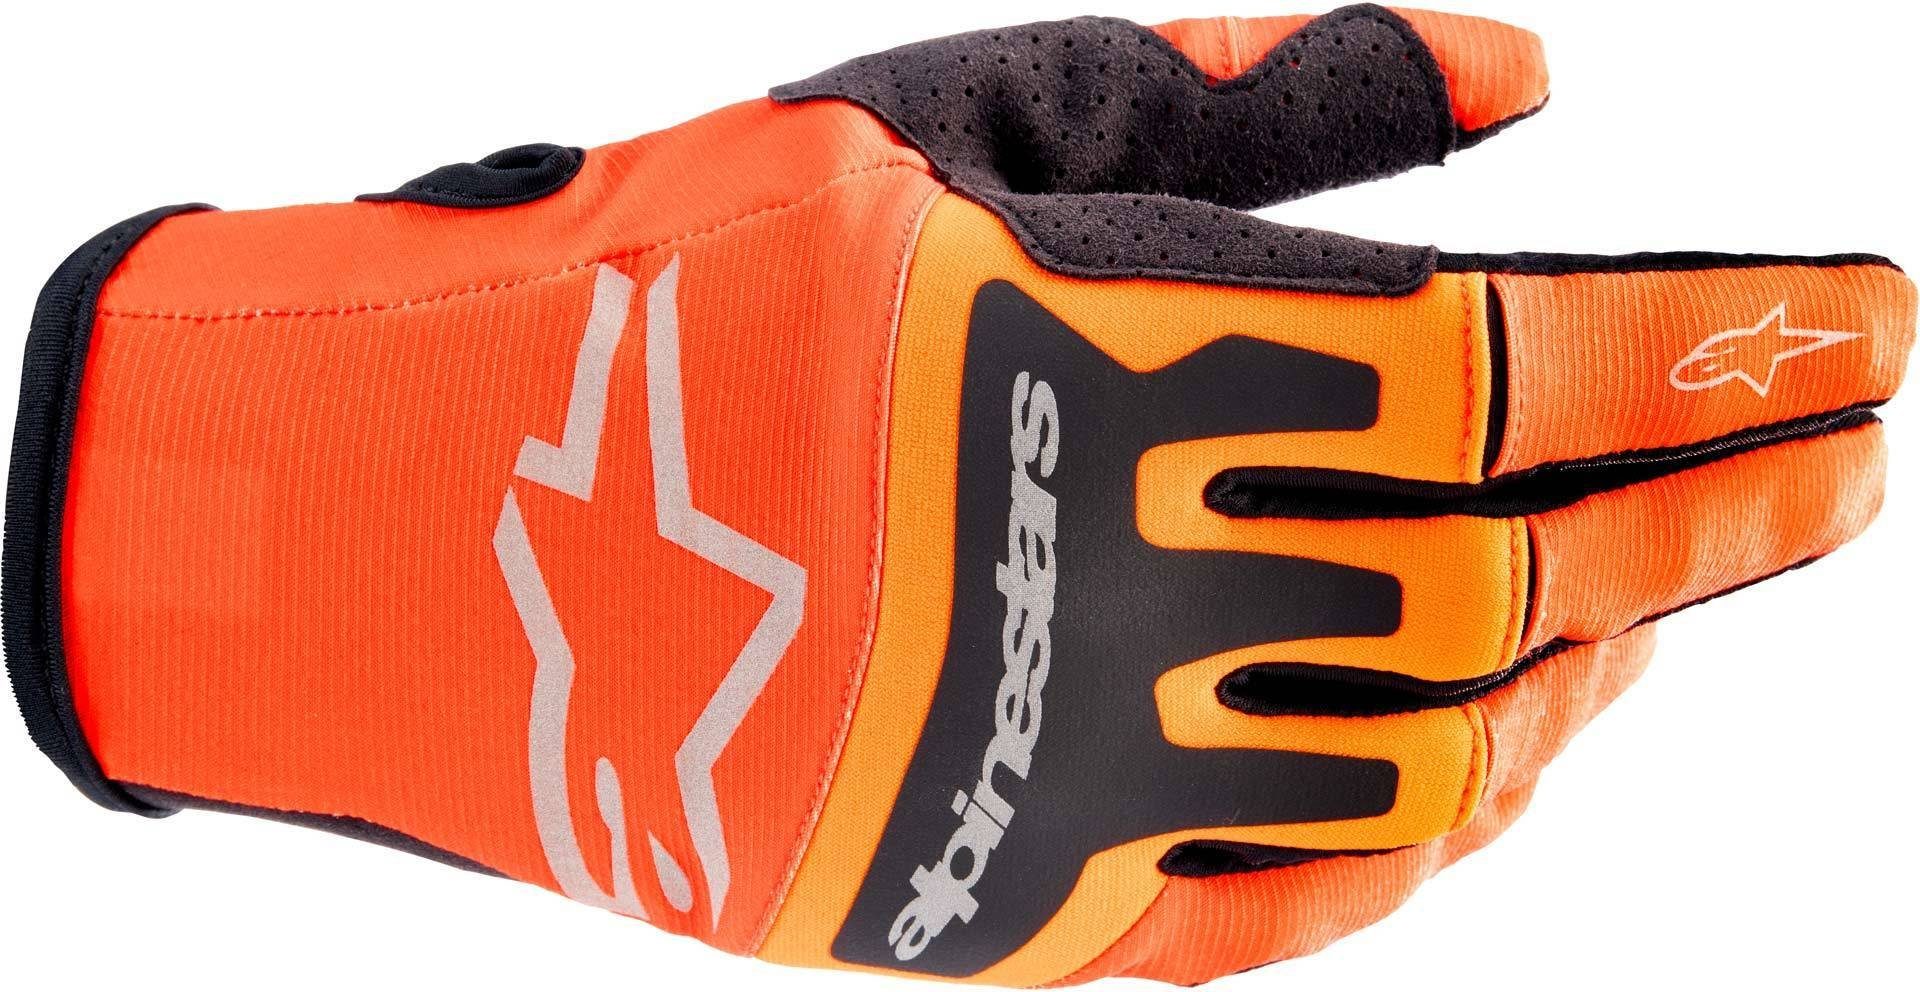 Handschuhe Alpinestars Motocross Orange/Black Motorradhandschuhe Techstar